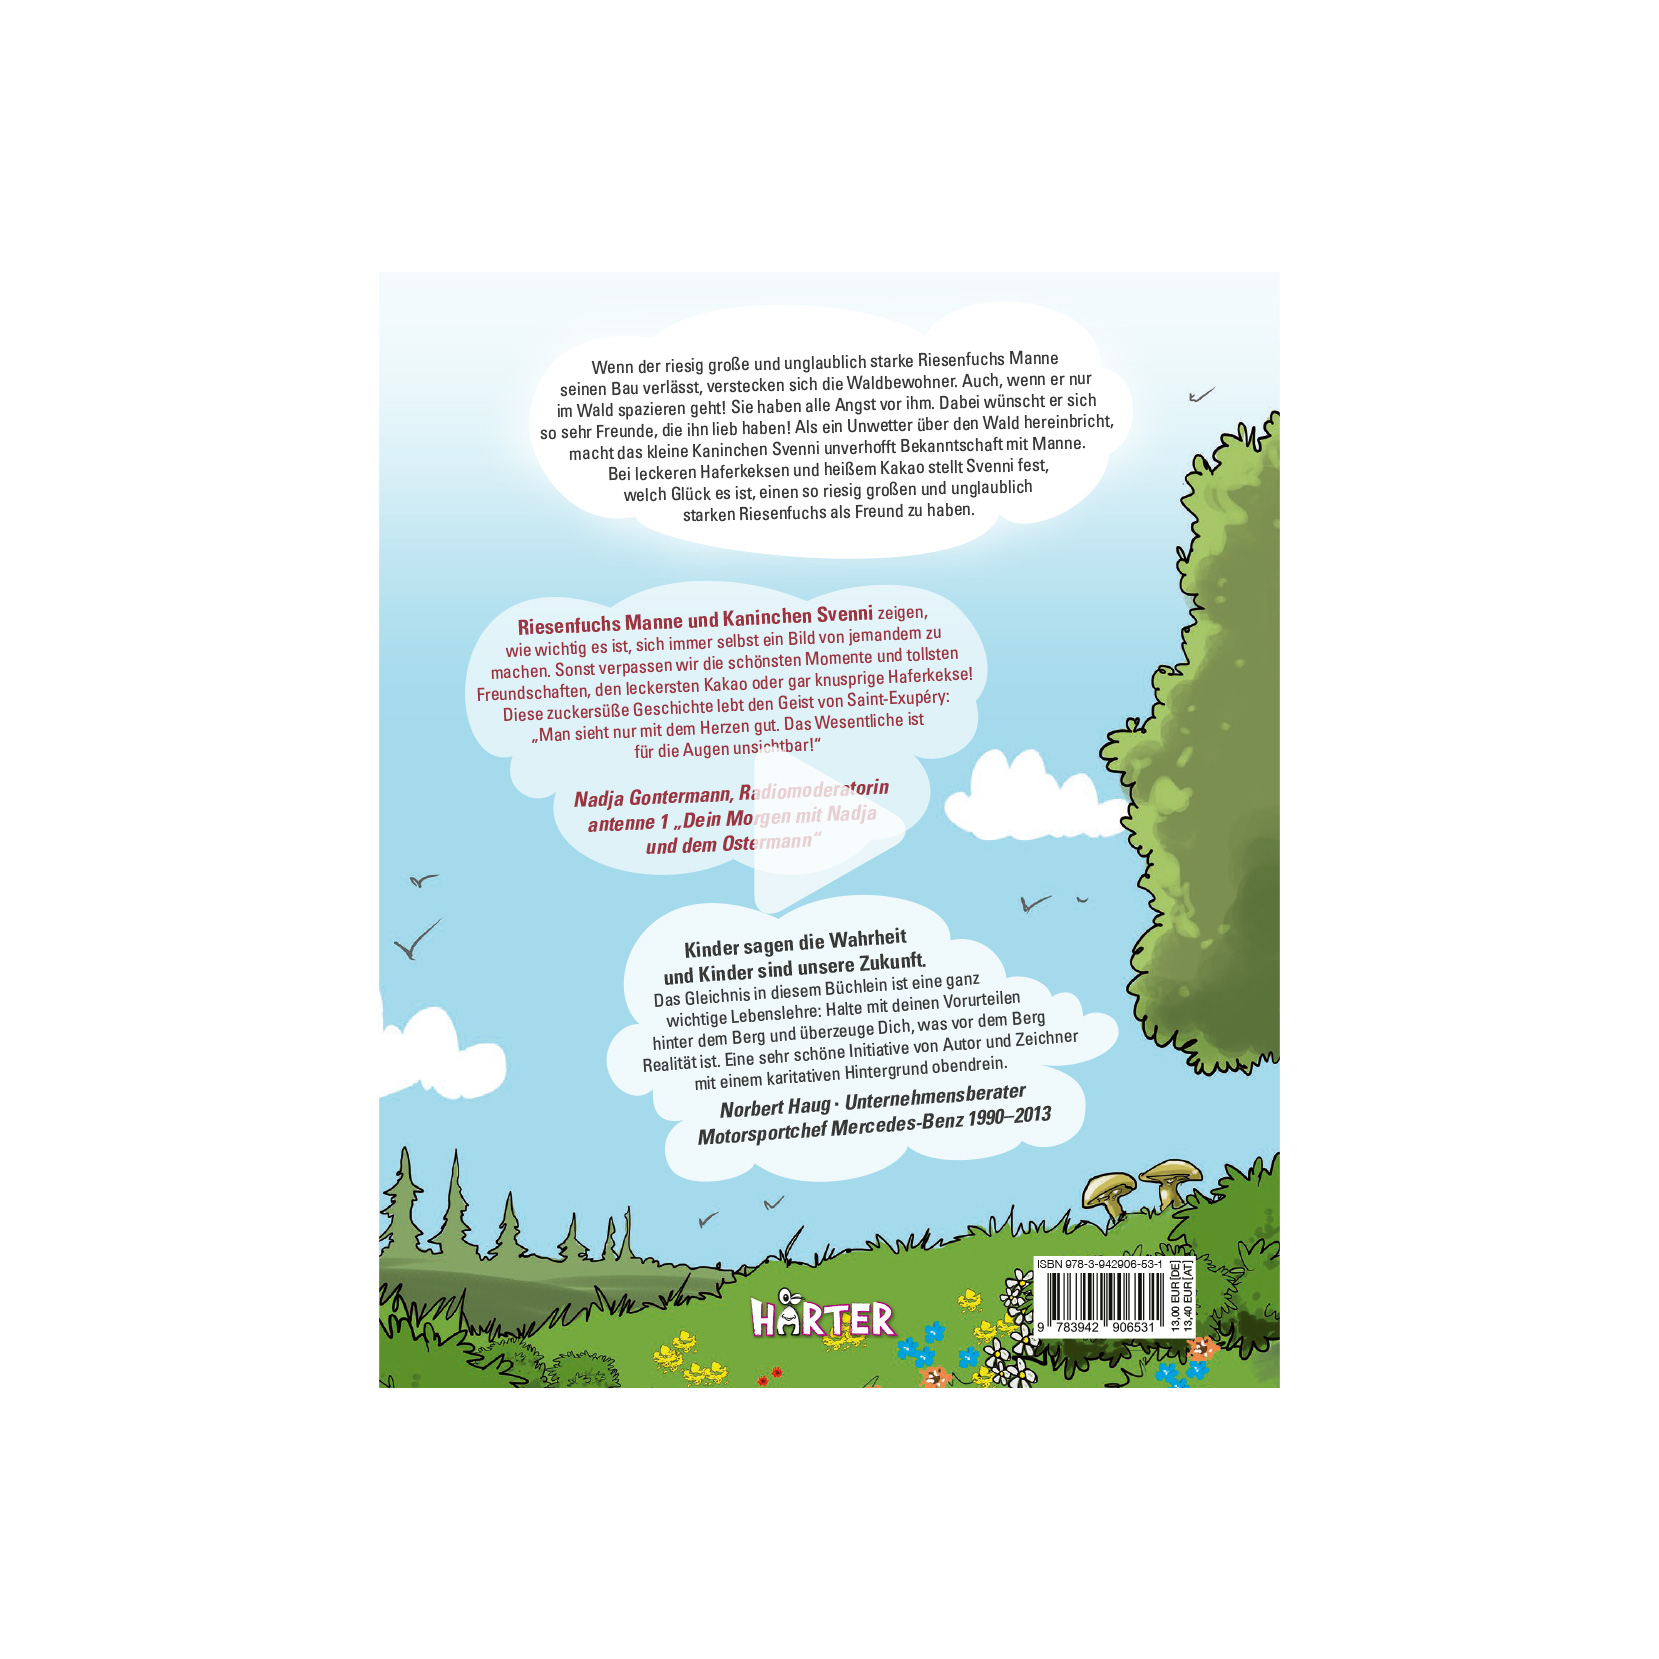 Der Riesenfuchs und das Kaninchen | Kinderbuch